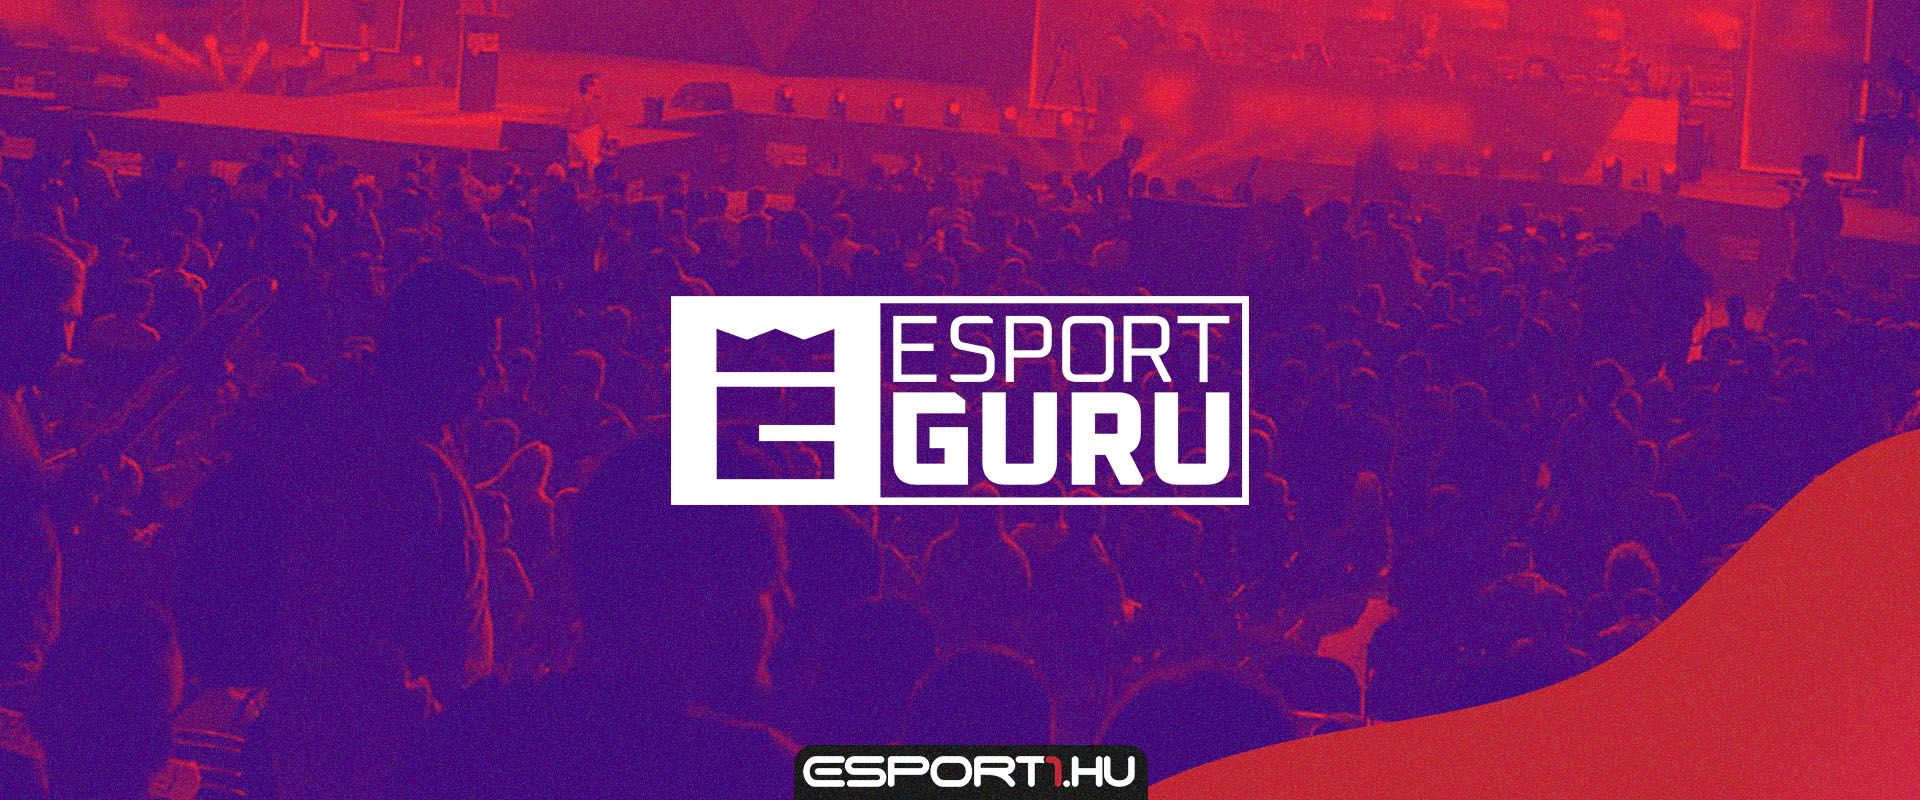 EsportGuru néven, díjmentesen elérhető e-sport csatorna indul a mindiGO felületén